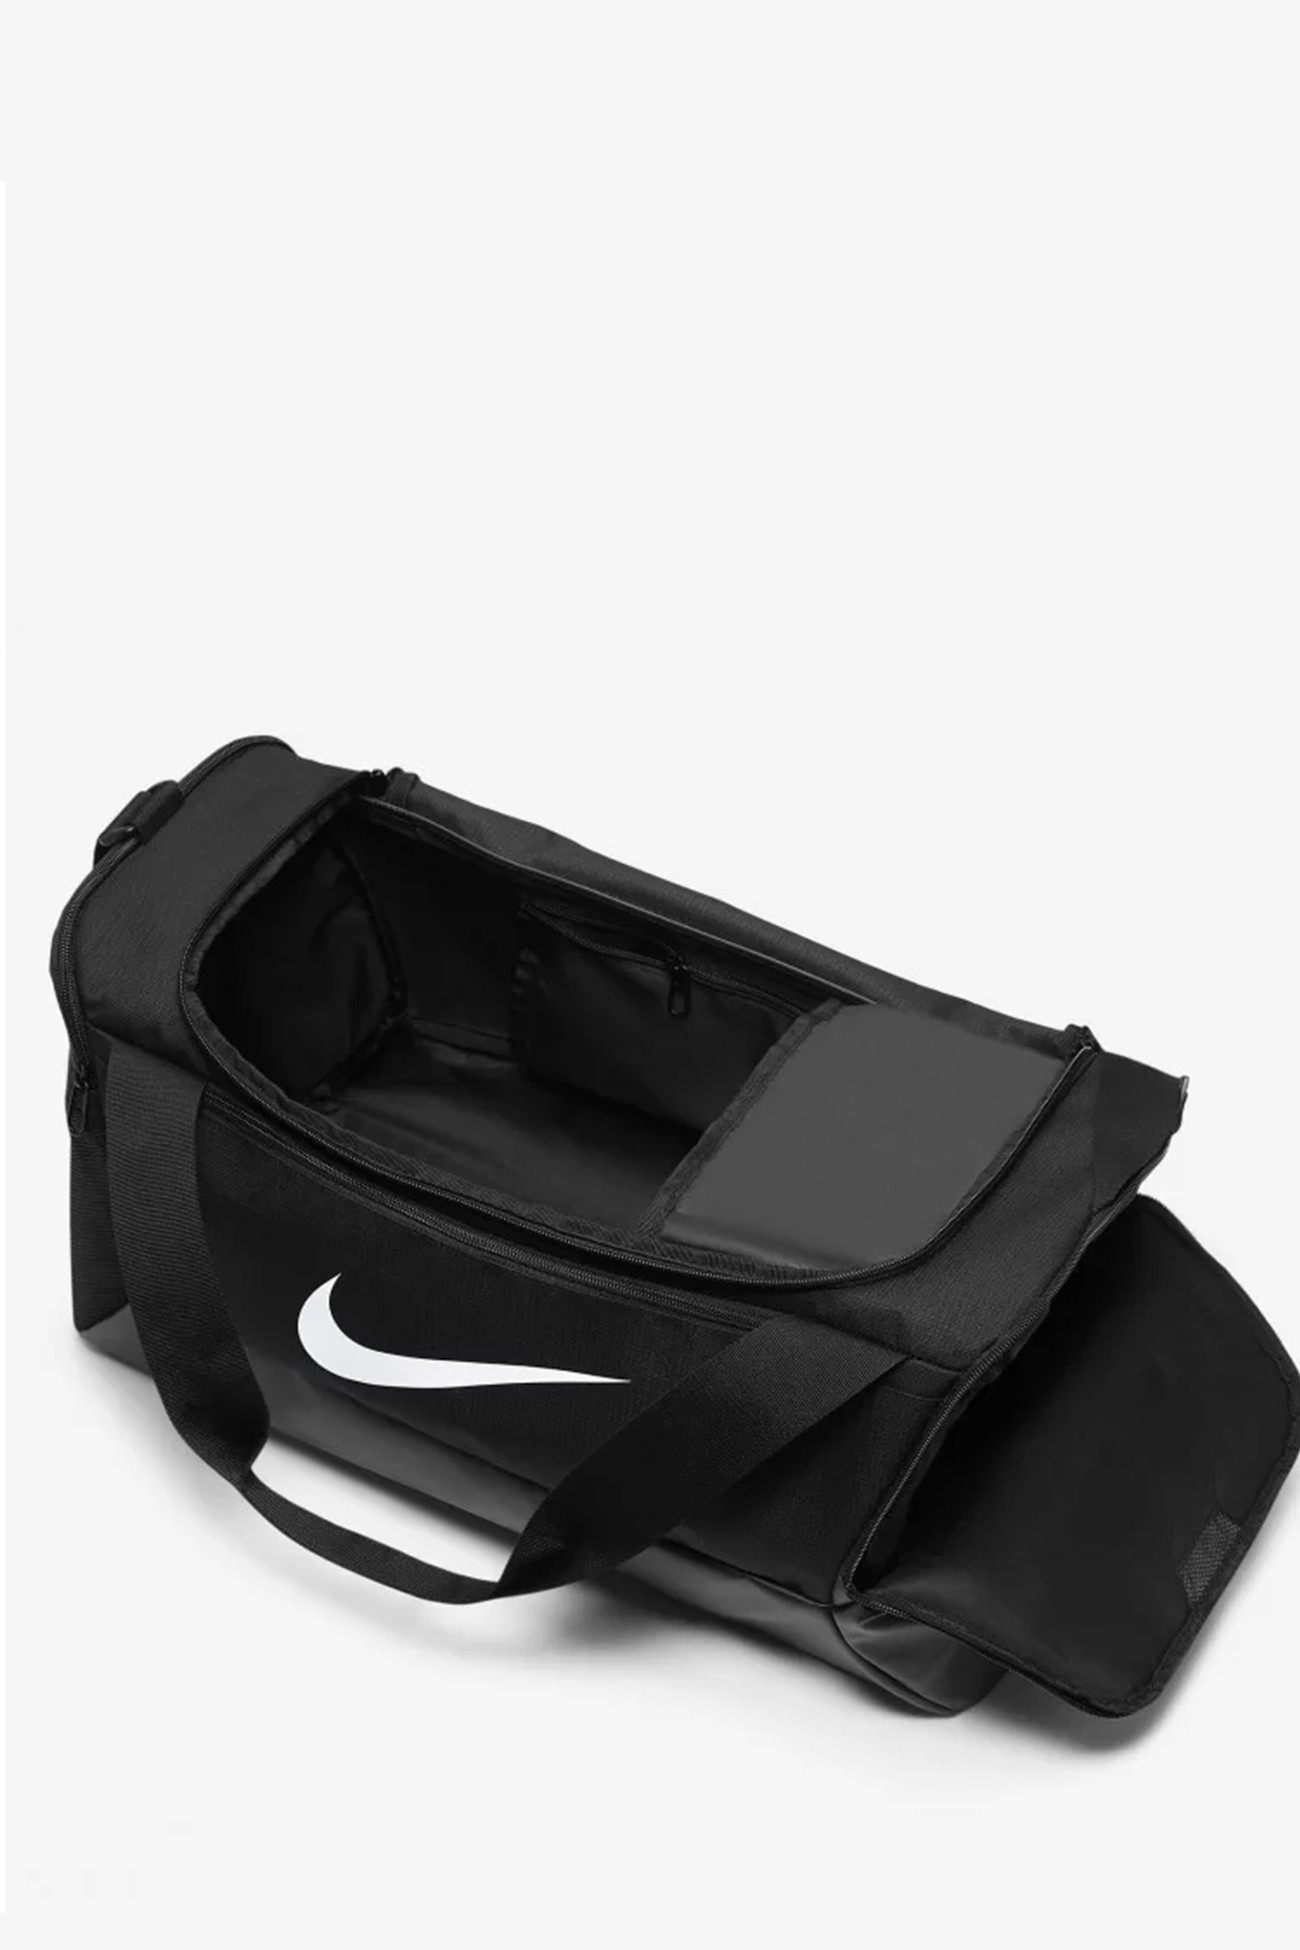 Сумка  Nike NK BRSLA S DUFF - 9.5 (41L) черная DM3976-010